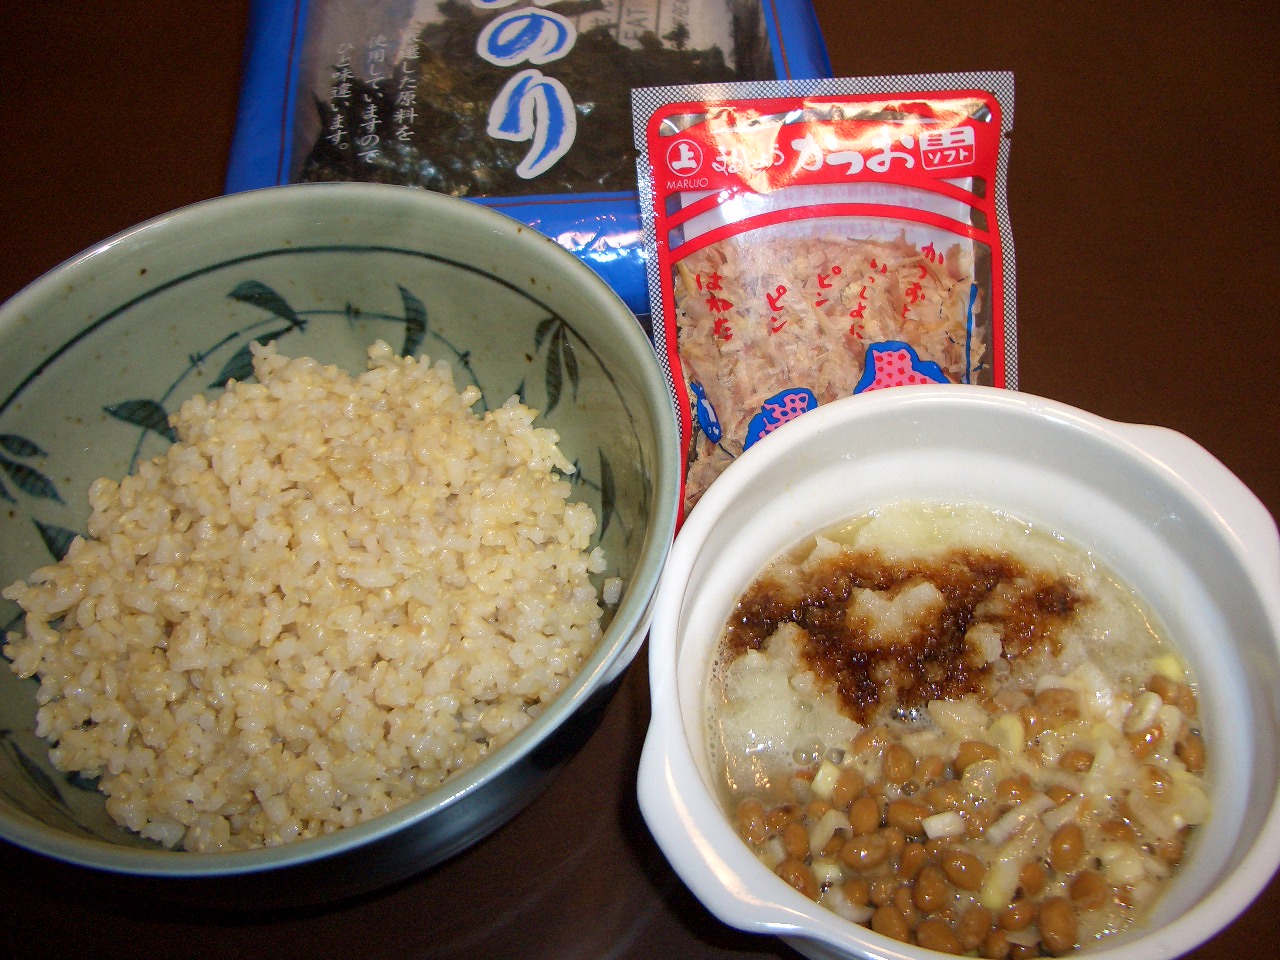 ねこまんま の作り方 おいしい玄米レシピ 生涯学習ブログ